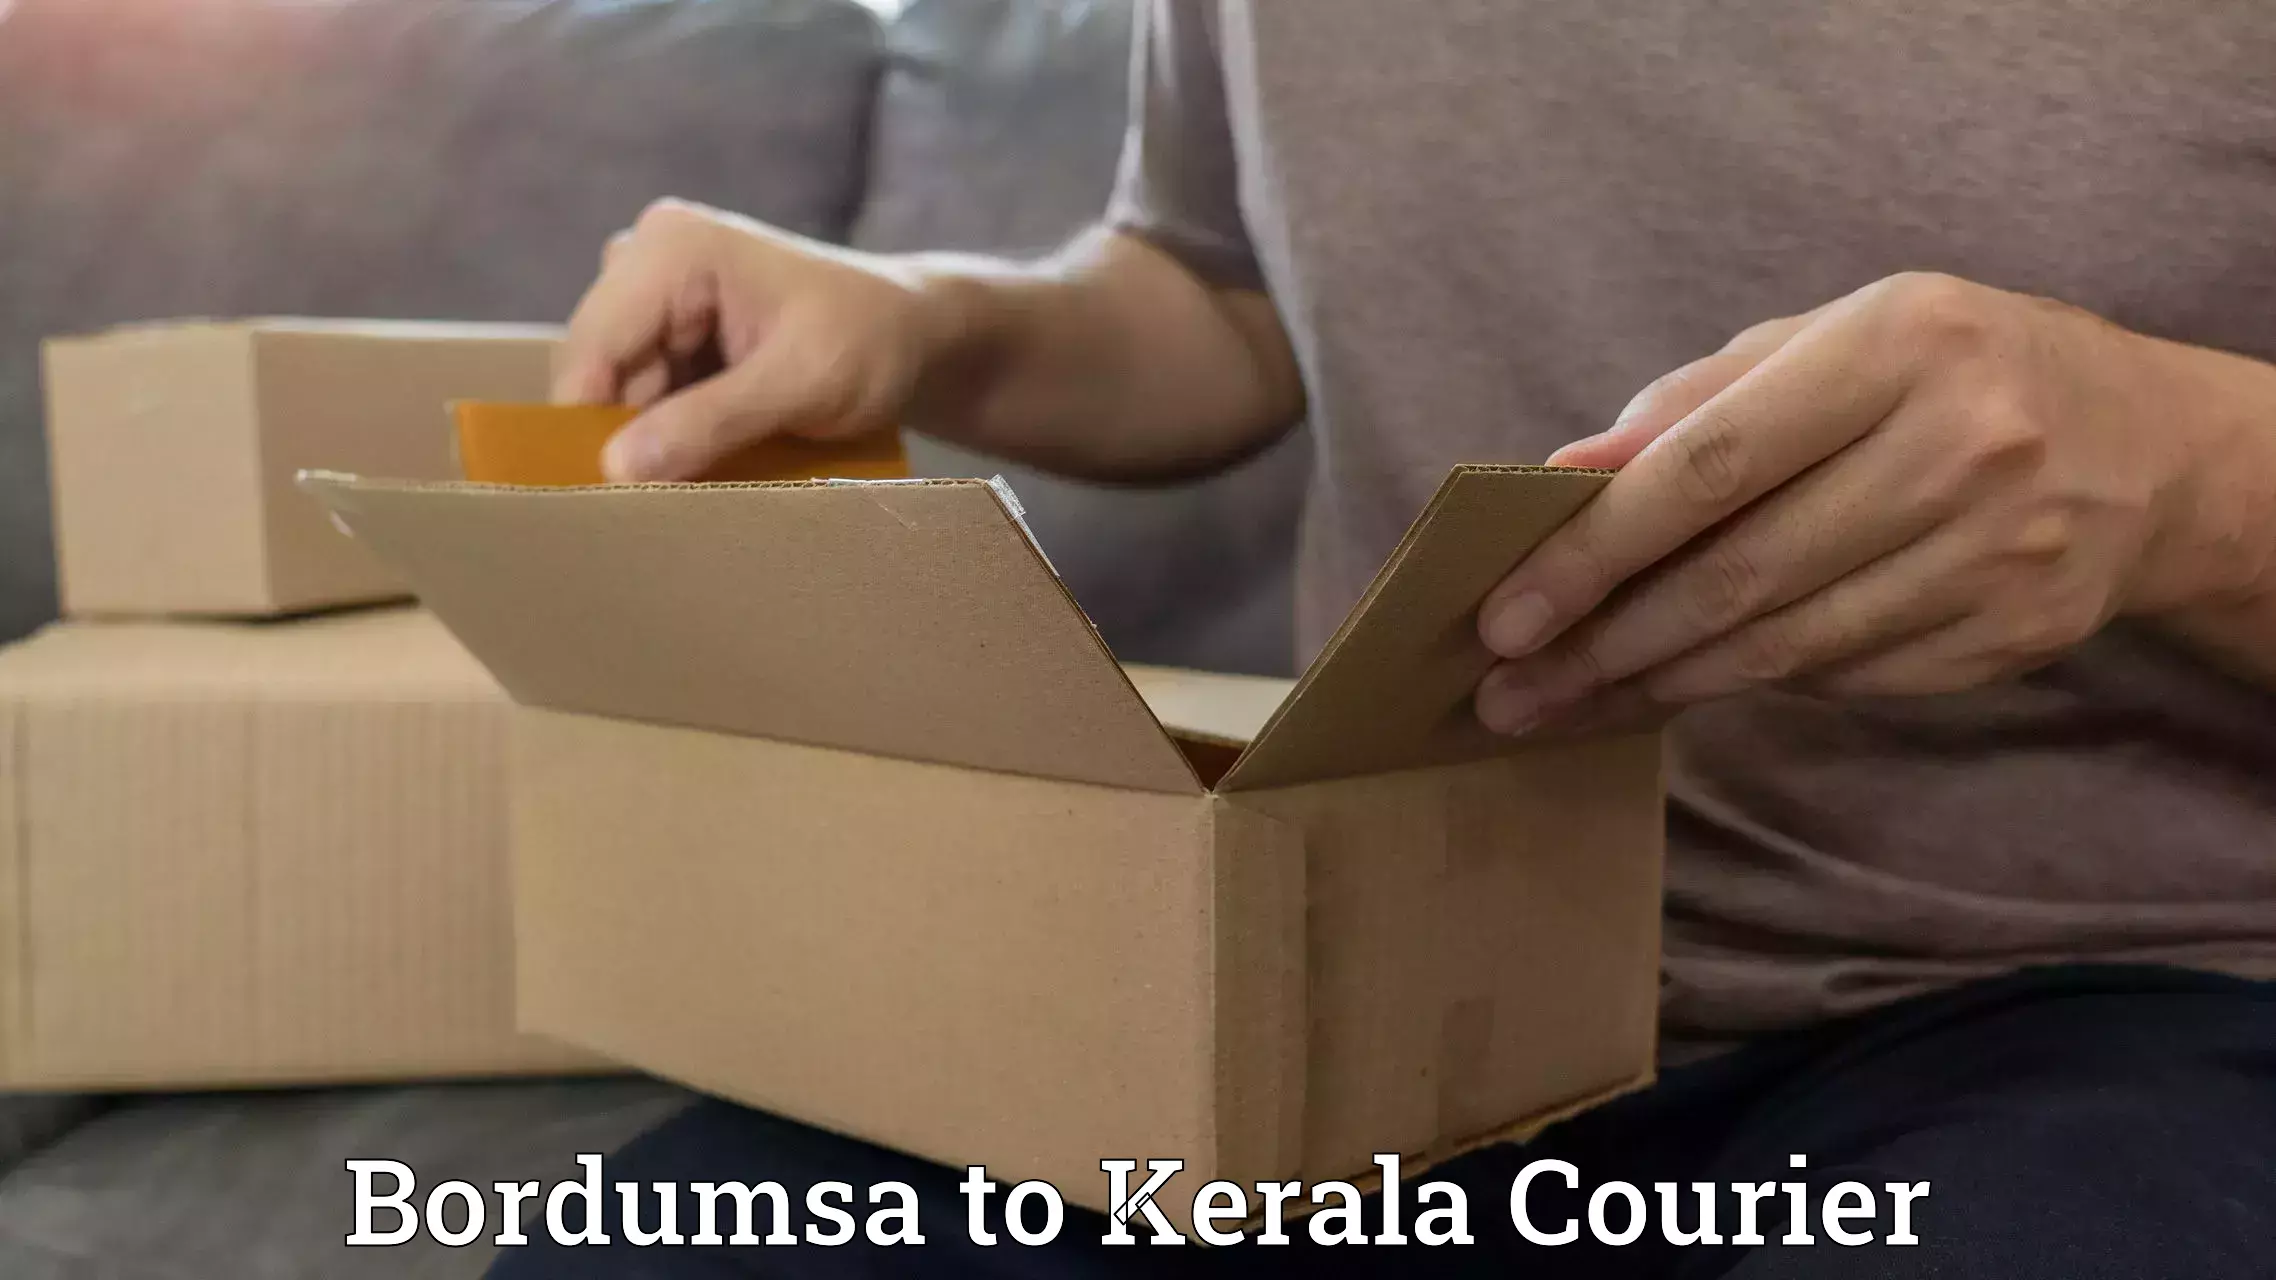 Courier service comparison Bordumsa to Kunnamkulam